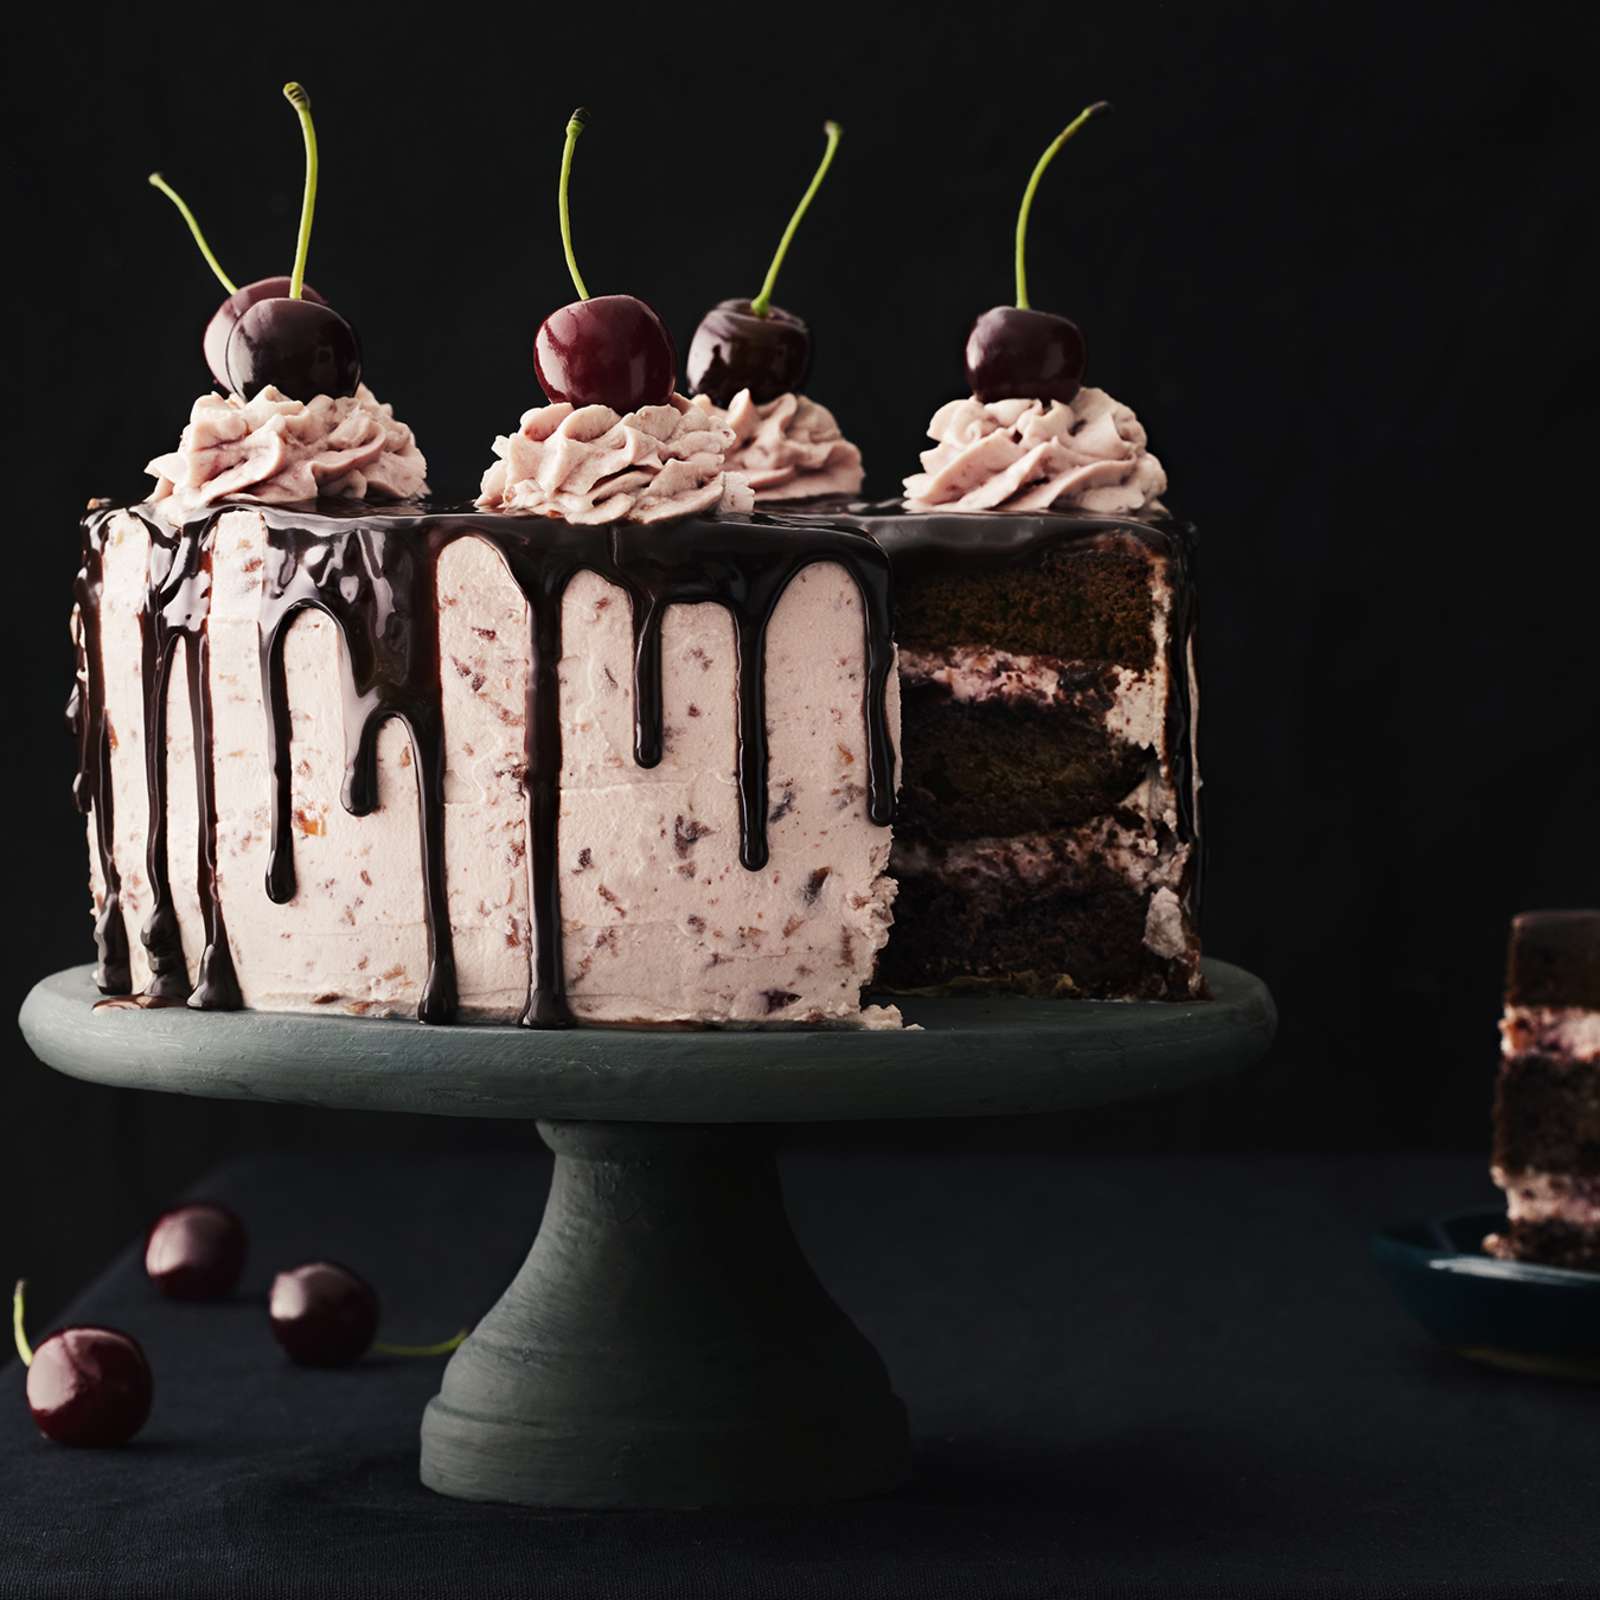 Tuoreilla kirsikoilla, pursotuksilla ja sulatetulla suklaalla koristeltu suklaa-kirsikkakakku tummalla, jalallisella kakkuvadilla. Kakusta leikattu pala lautaselle.